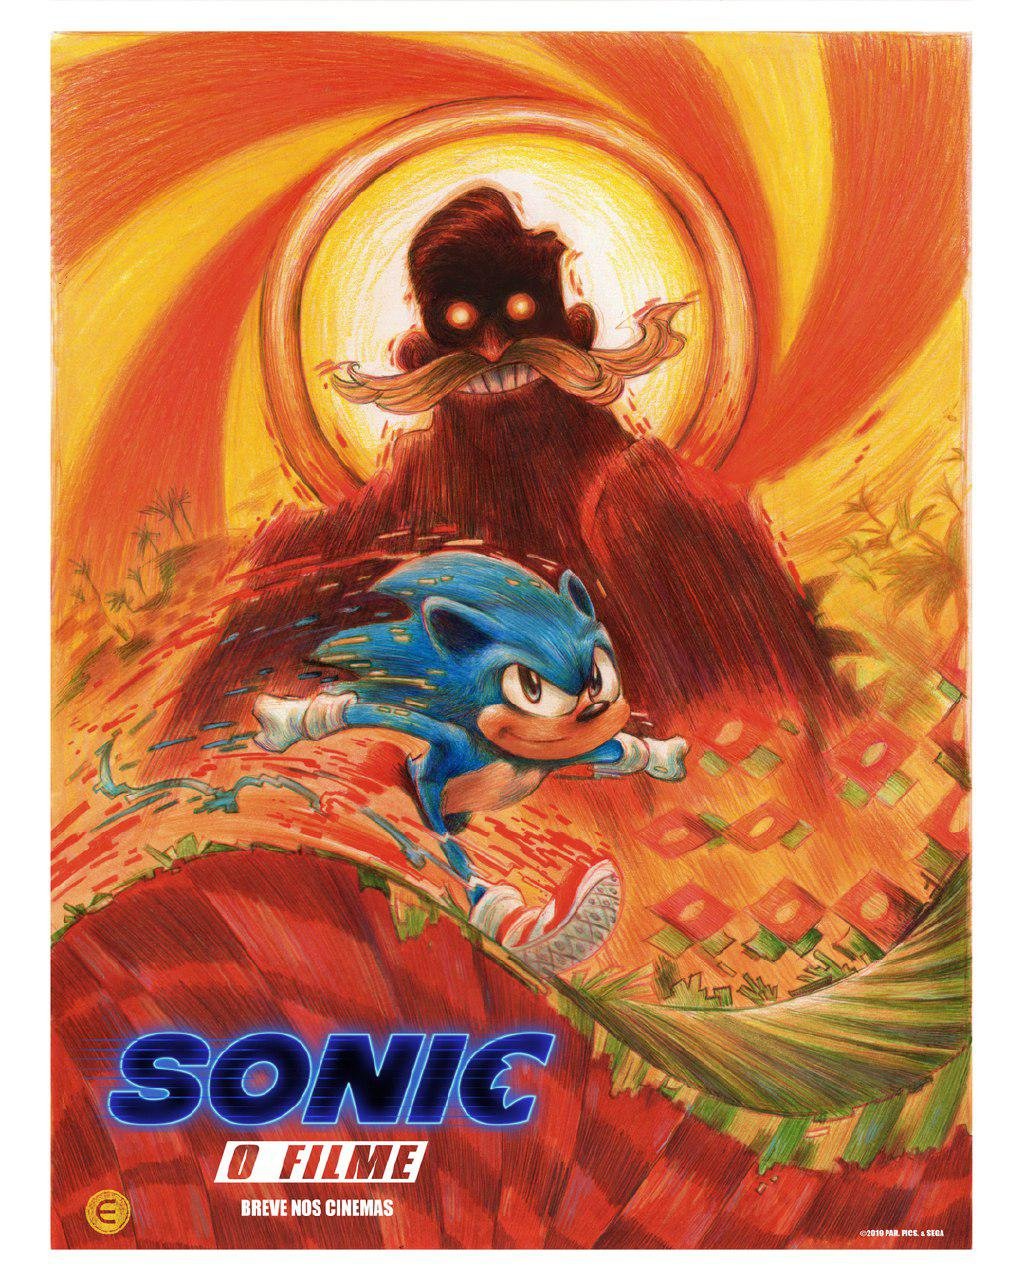 Isto é um filme do Sonic?, critica criador do herói após imagem vazada -  05/03/2019 - UOL Start